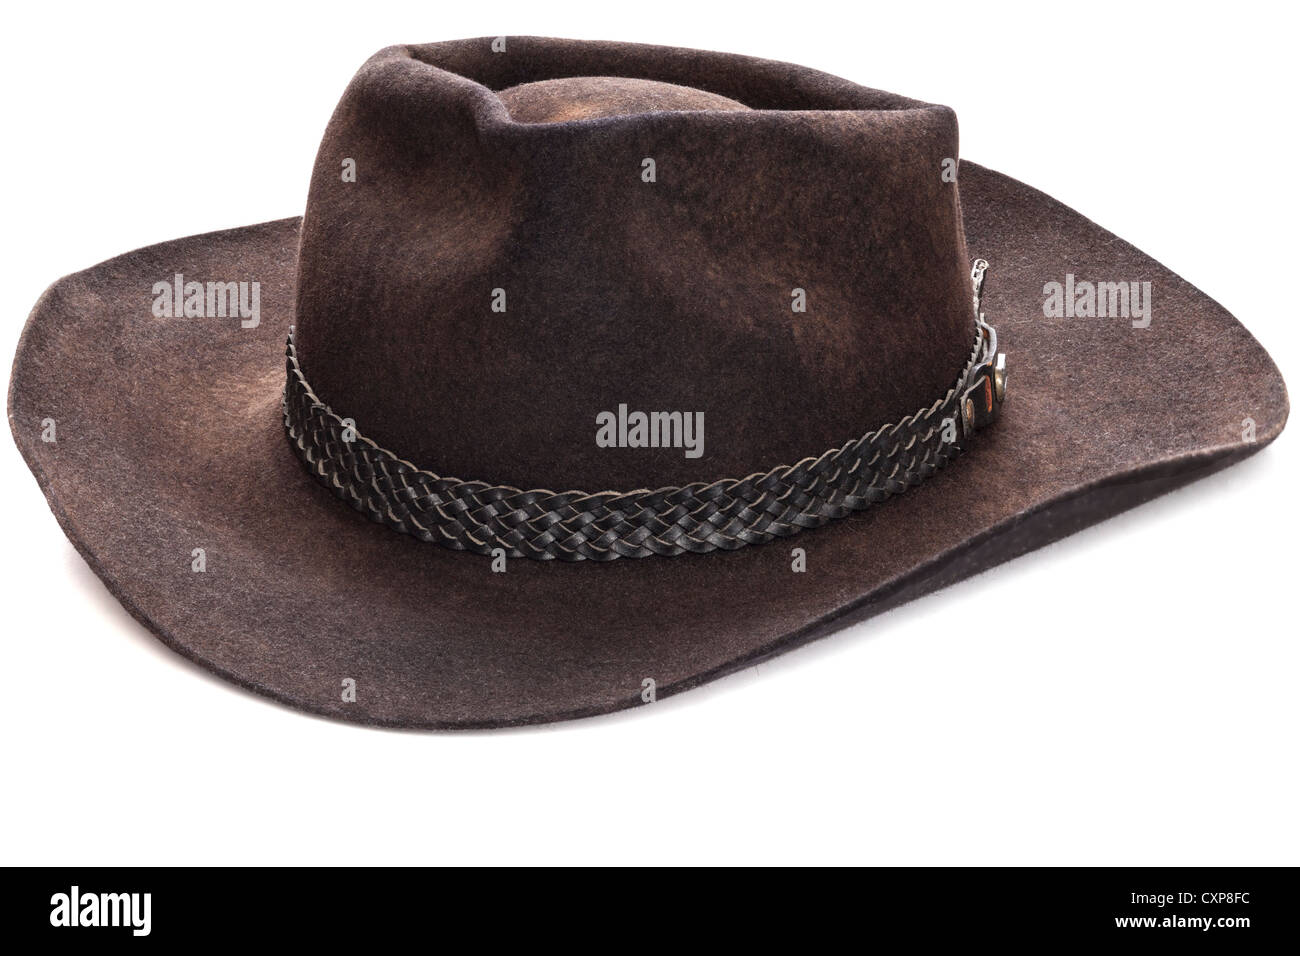 Cappello akubra immagini e fotografie stock ad alta risoluzione - Alamy